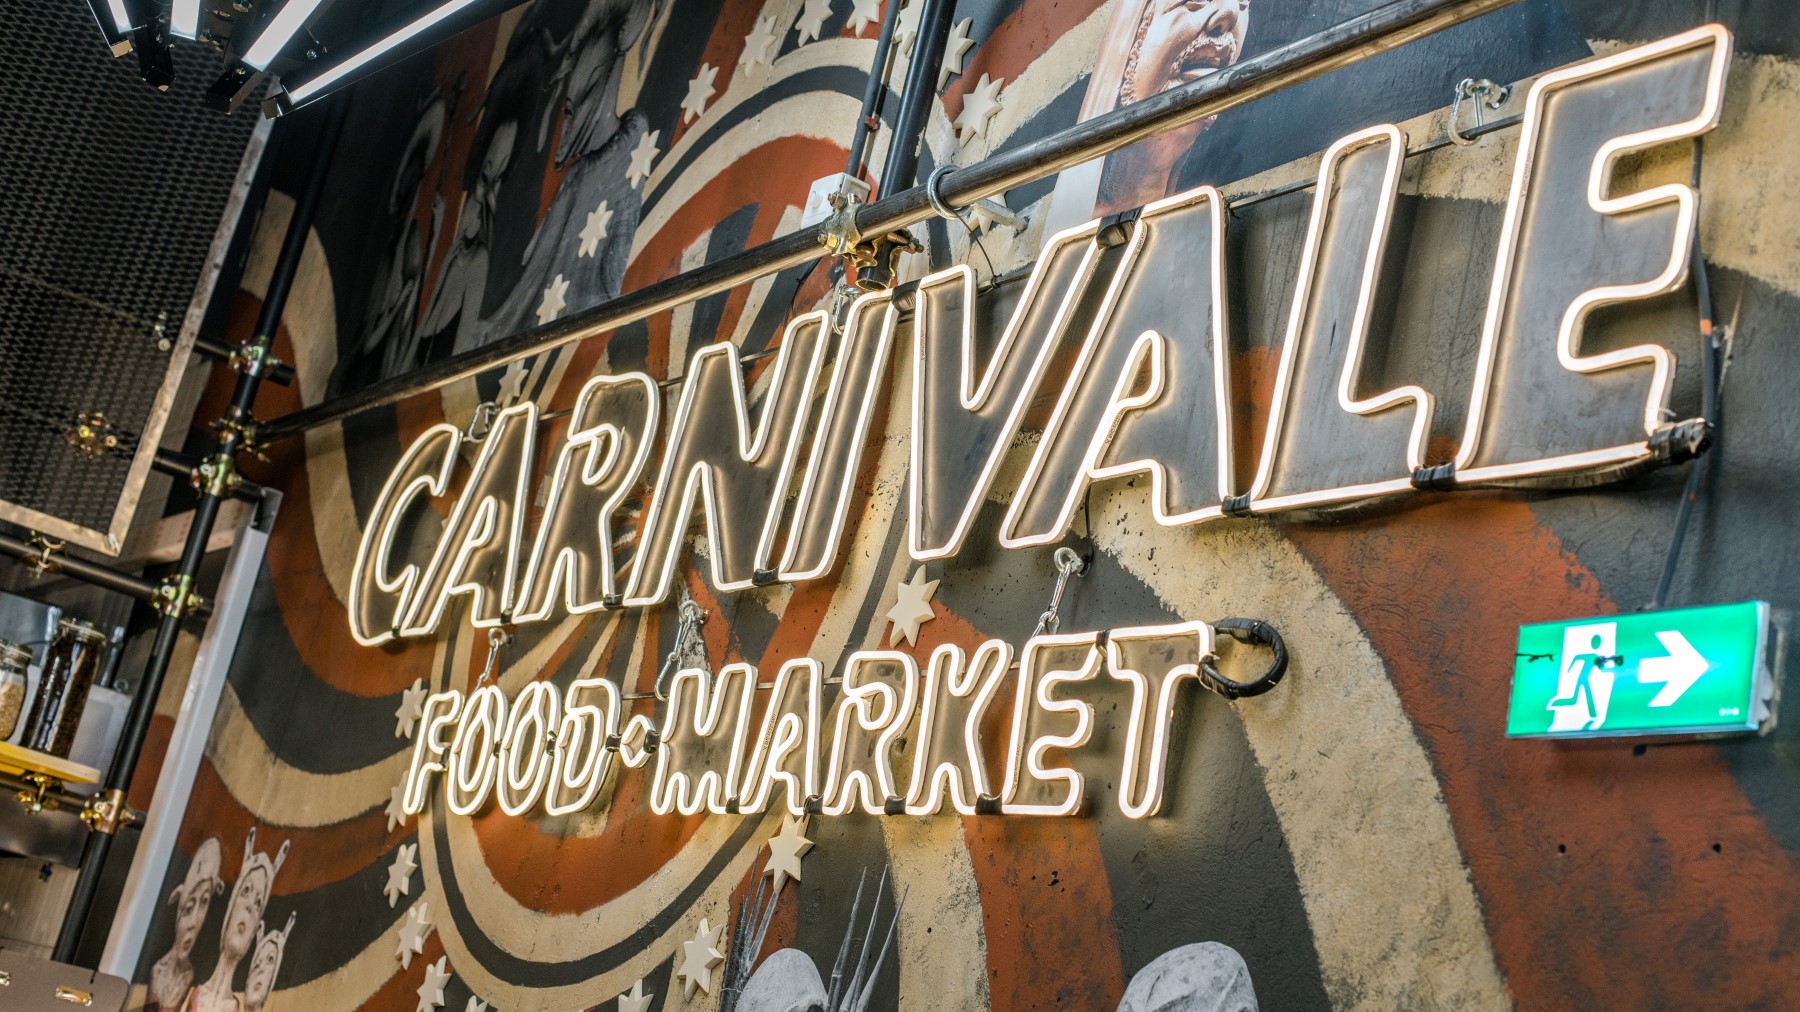 carnivale food market